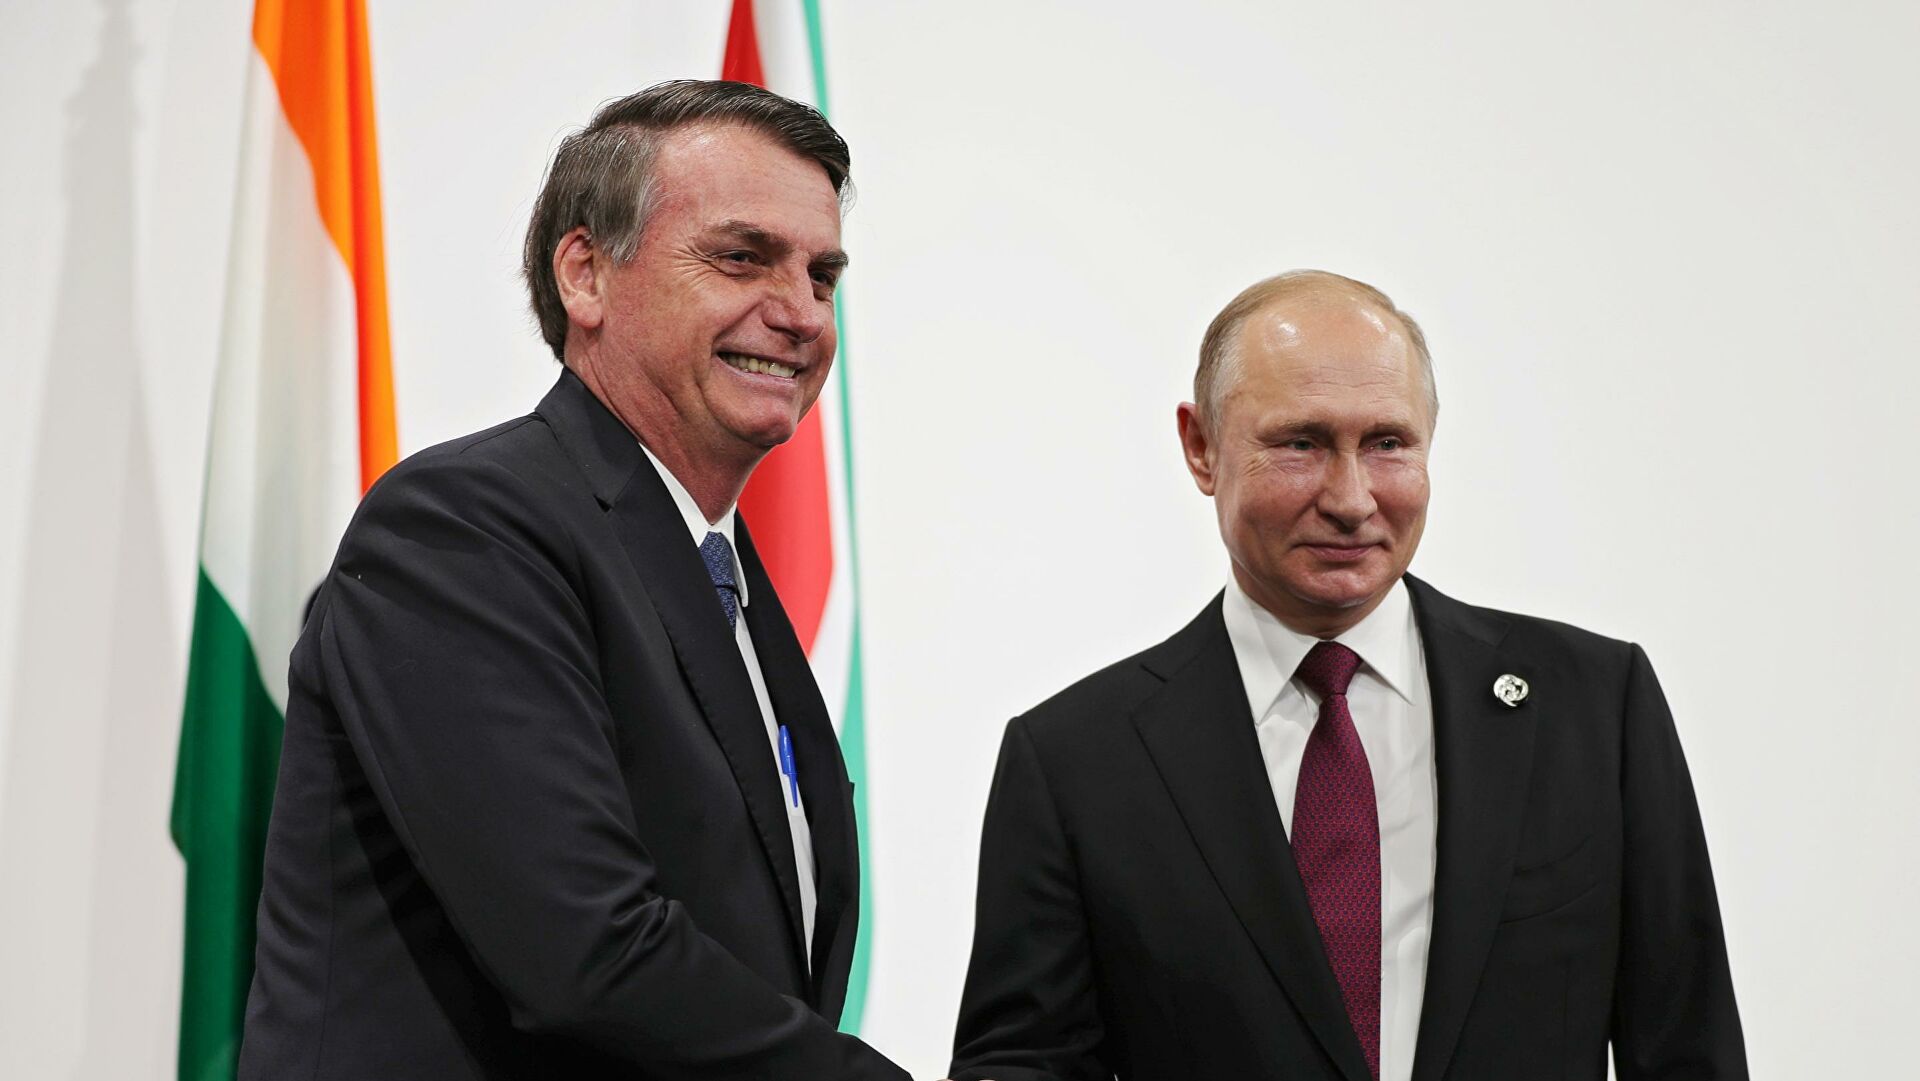 Бразилия обвинила США в давлении на её президента с целью недопущения его встречи с Путиным